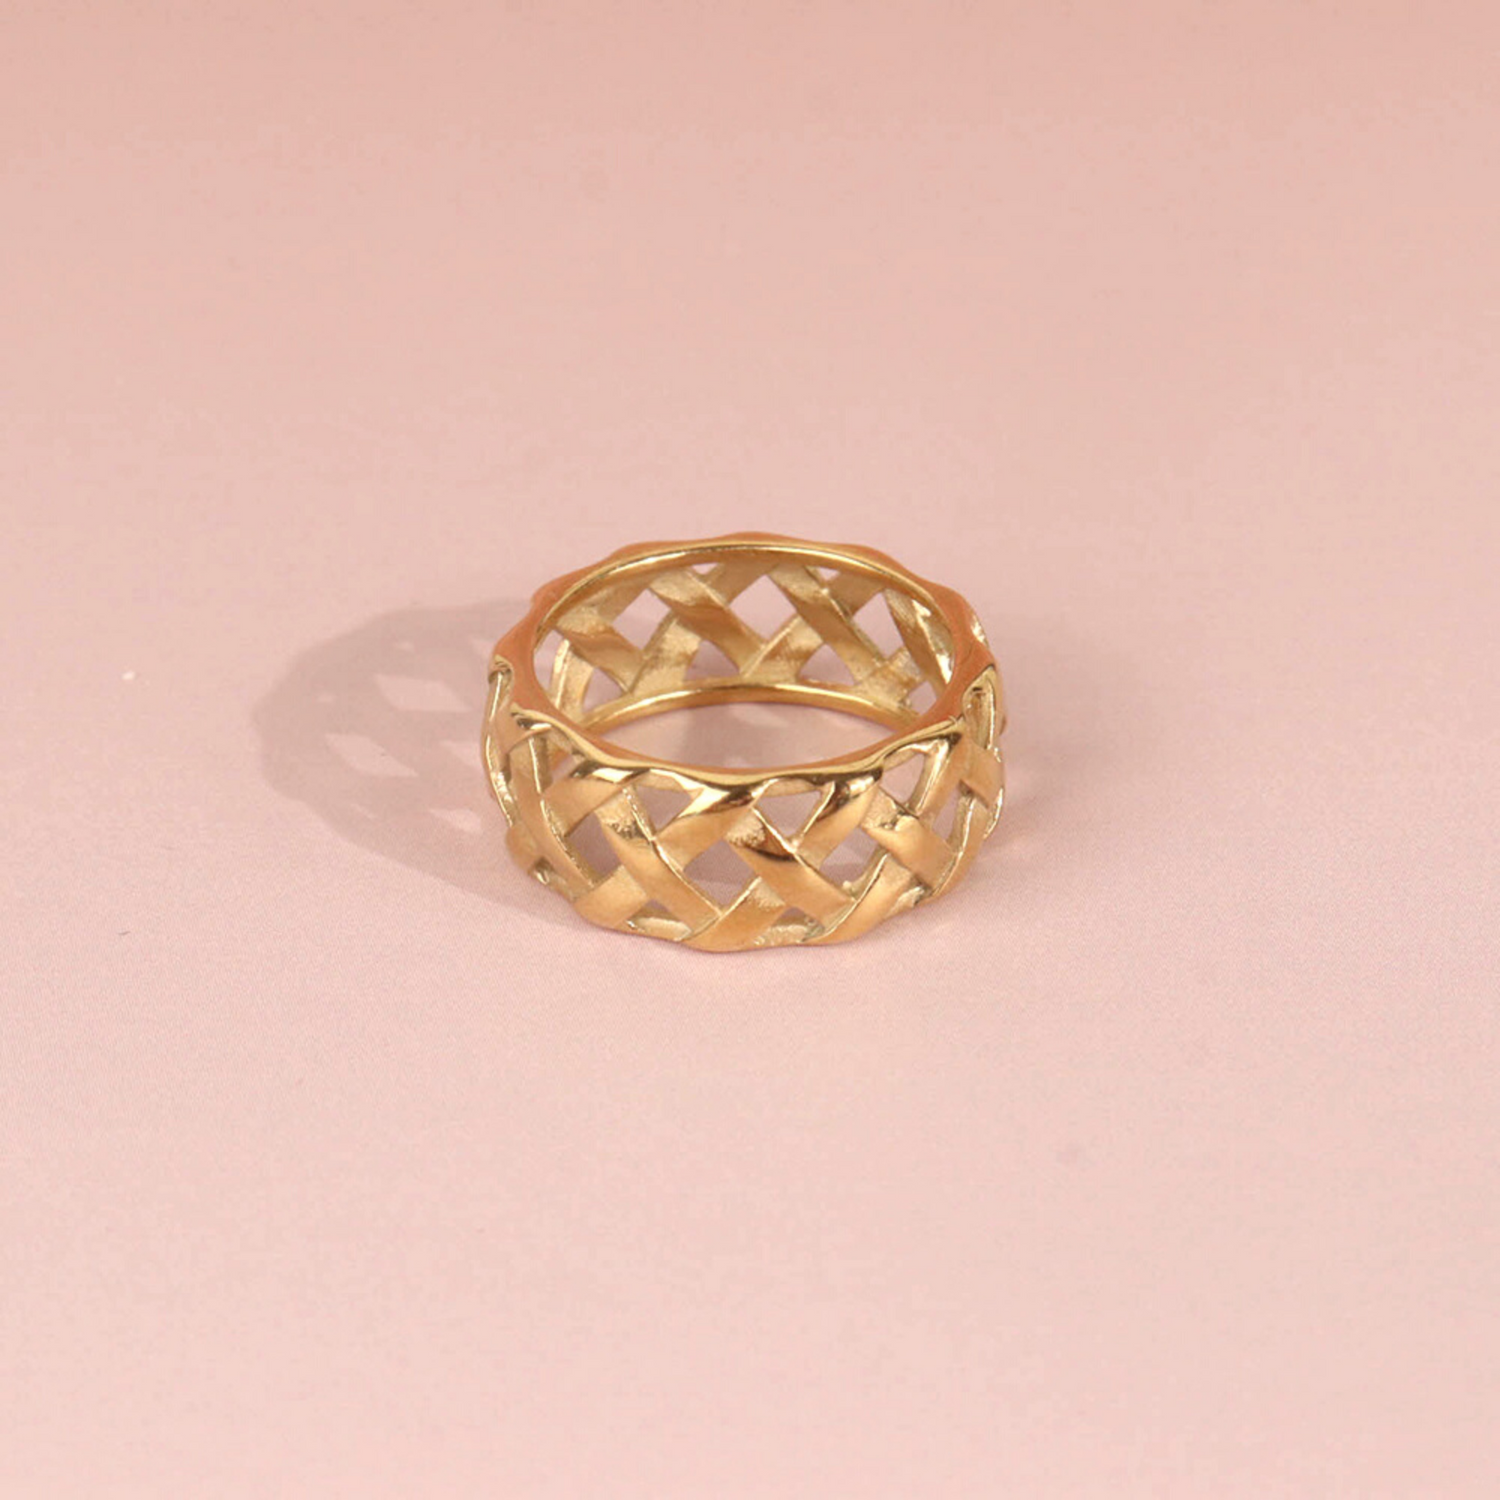 Louis Vuitton Gold Tone Celeste Bracelet & Ring Set